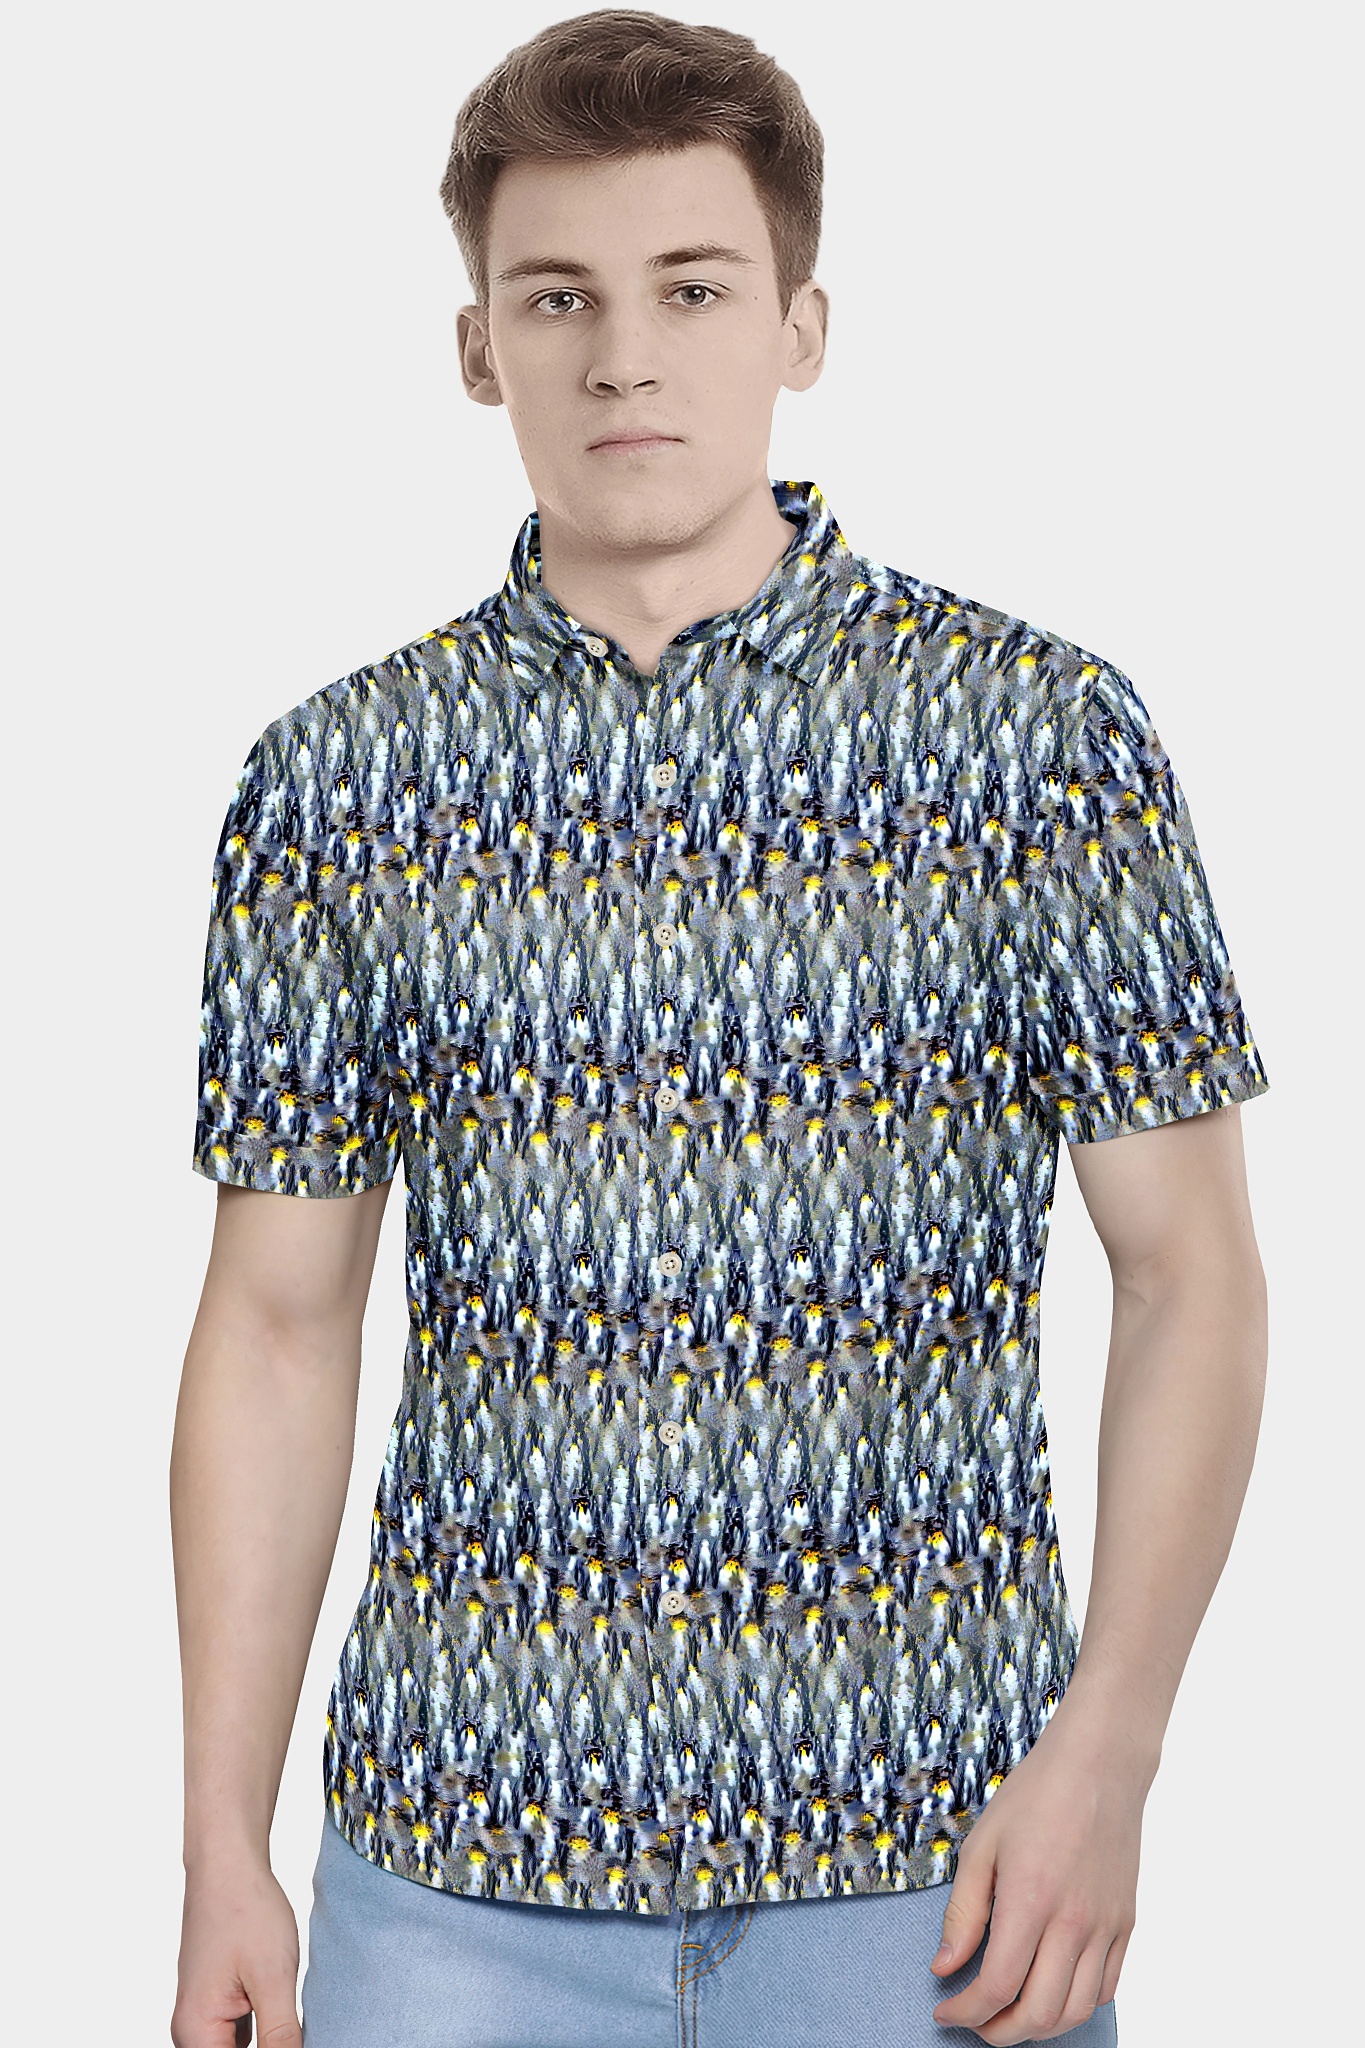 penguin_shirt.jpg